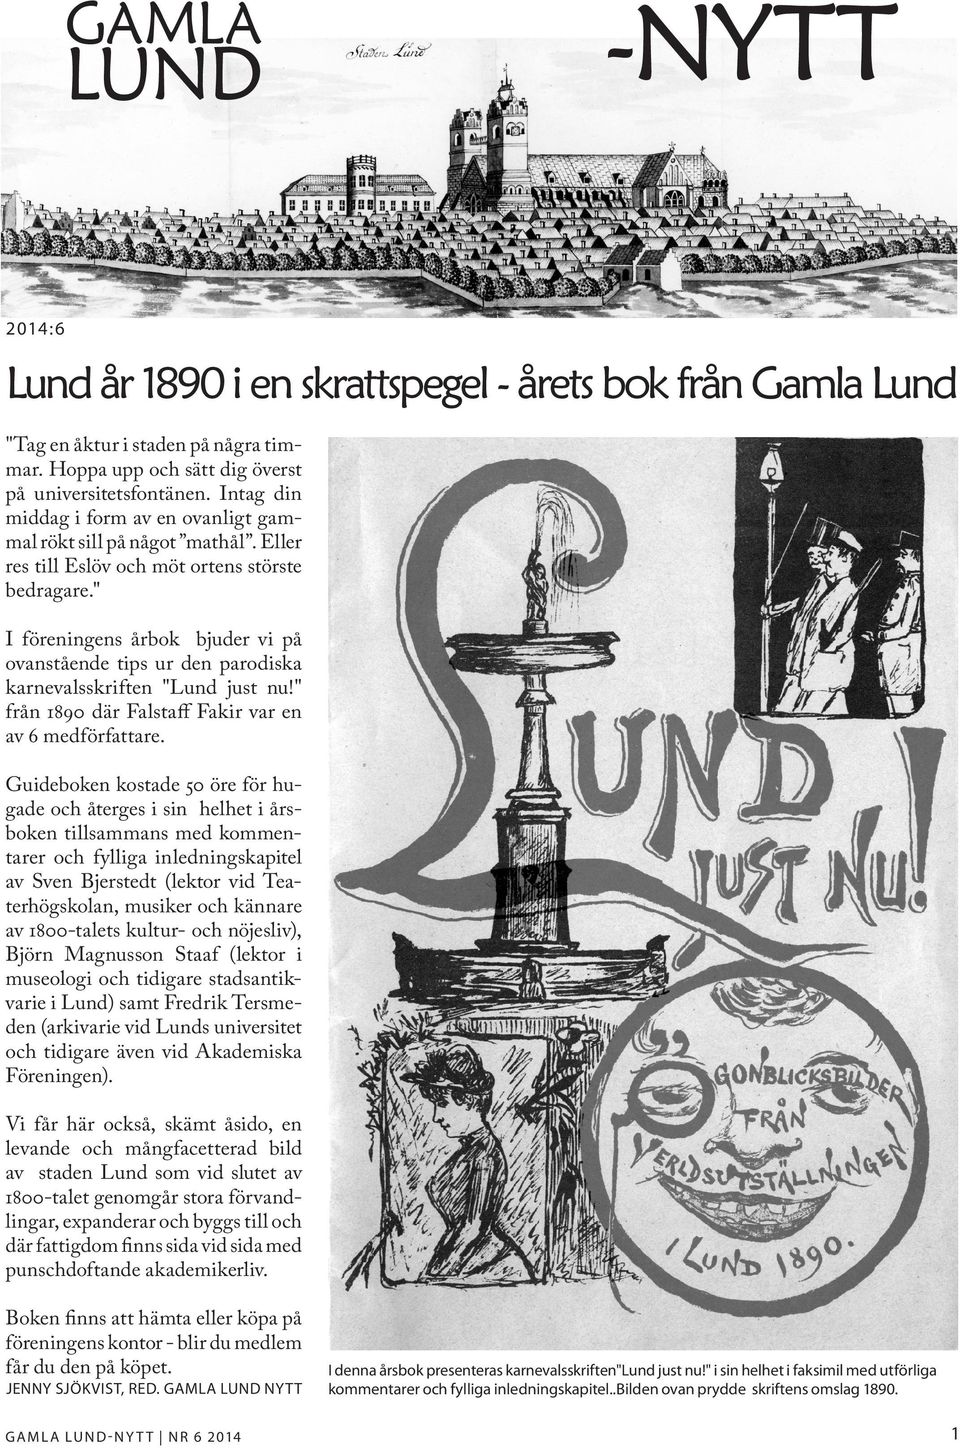 " I föreningens årbok bjuder vi på ovanstående tips ur den parodiska karnevalsskriften "Lund just nu!" från 1890 där Falstaff Fakir var en av 6 medförfattare.